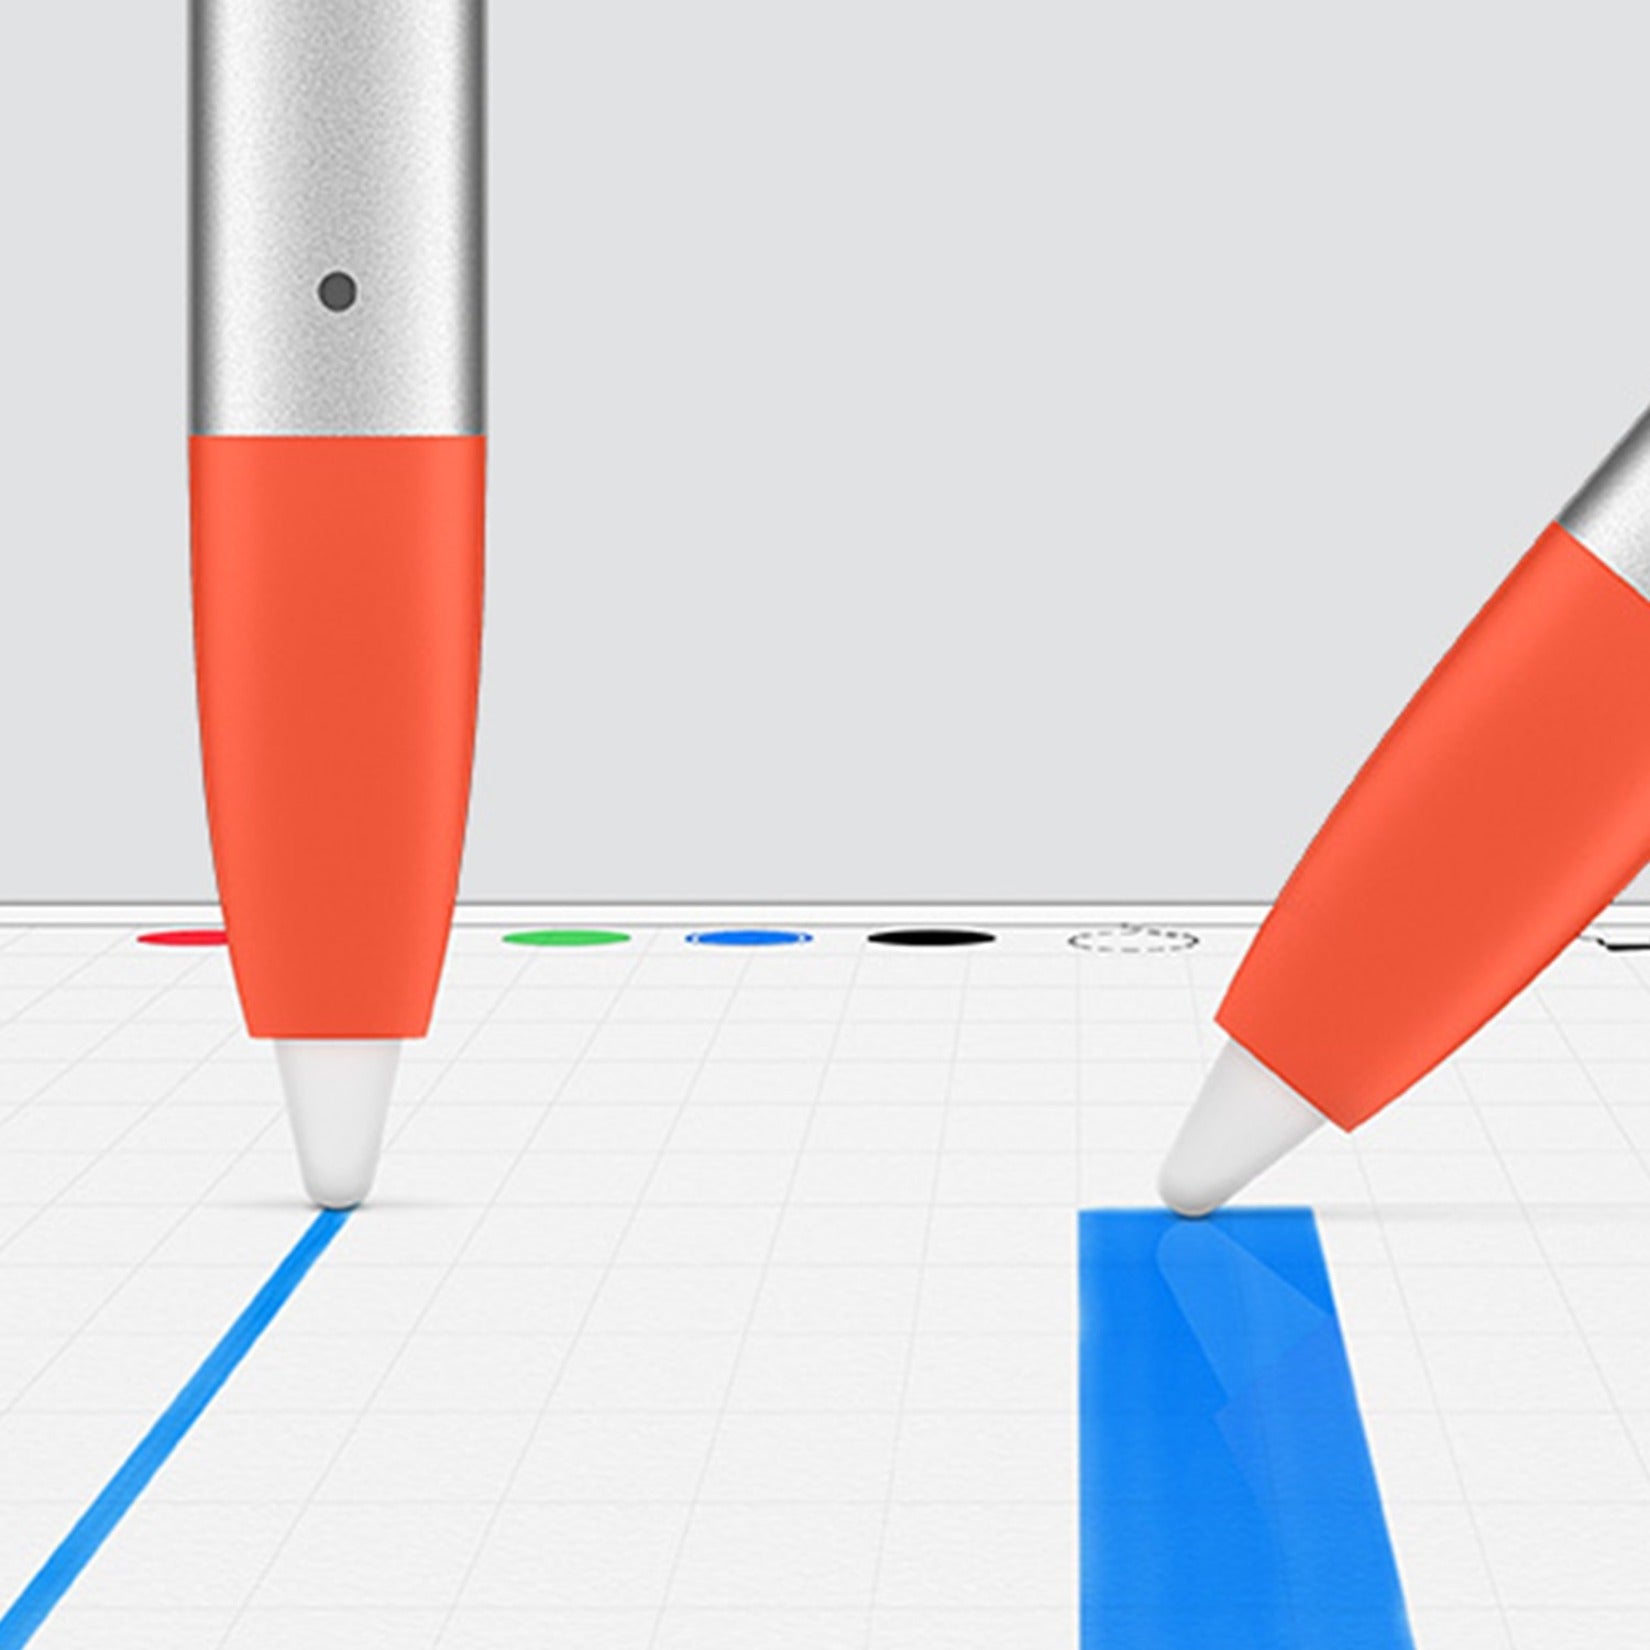 Logitech 914-000033 Crayon Digital Pencil For iPad (6th gen), Compatible with iPadOS 14 Scribble